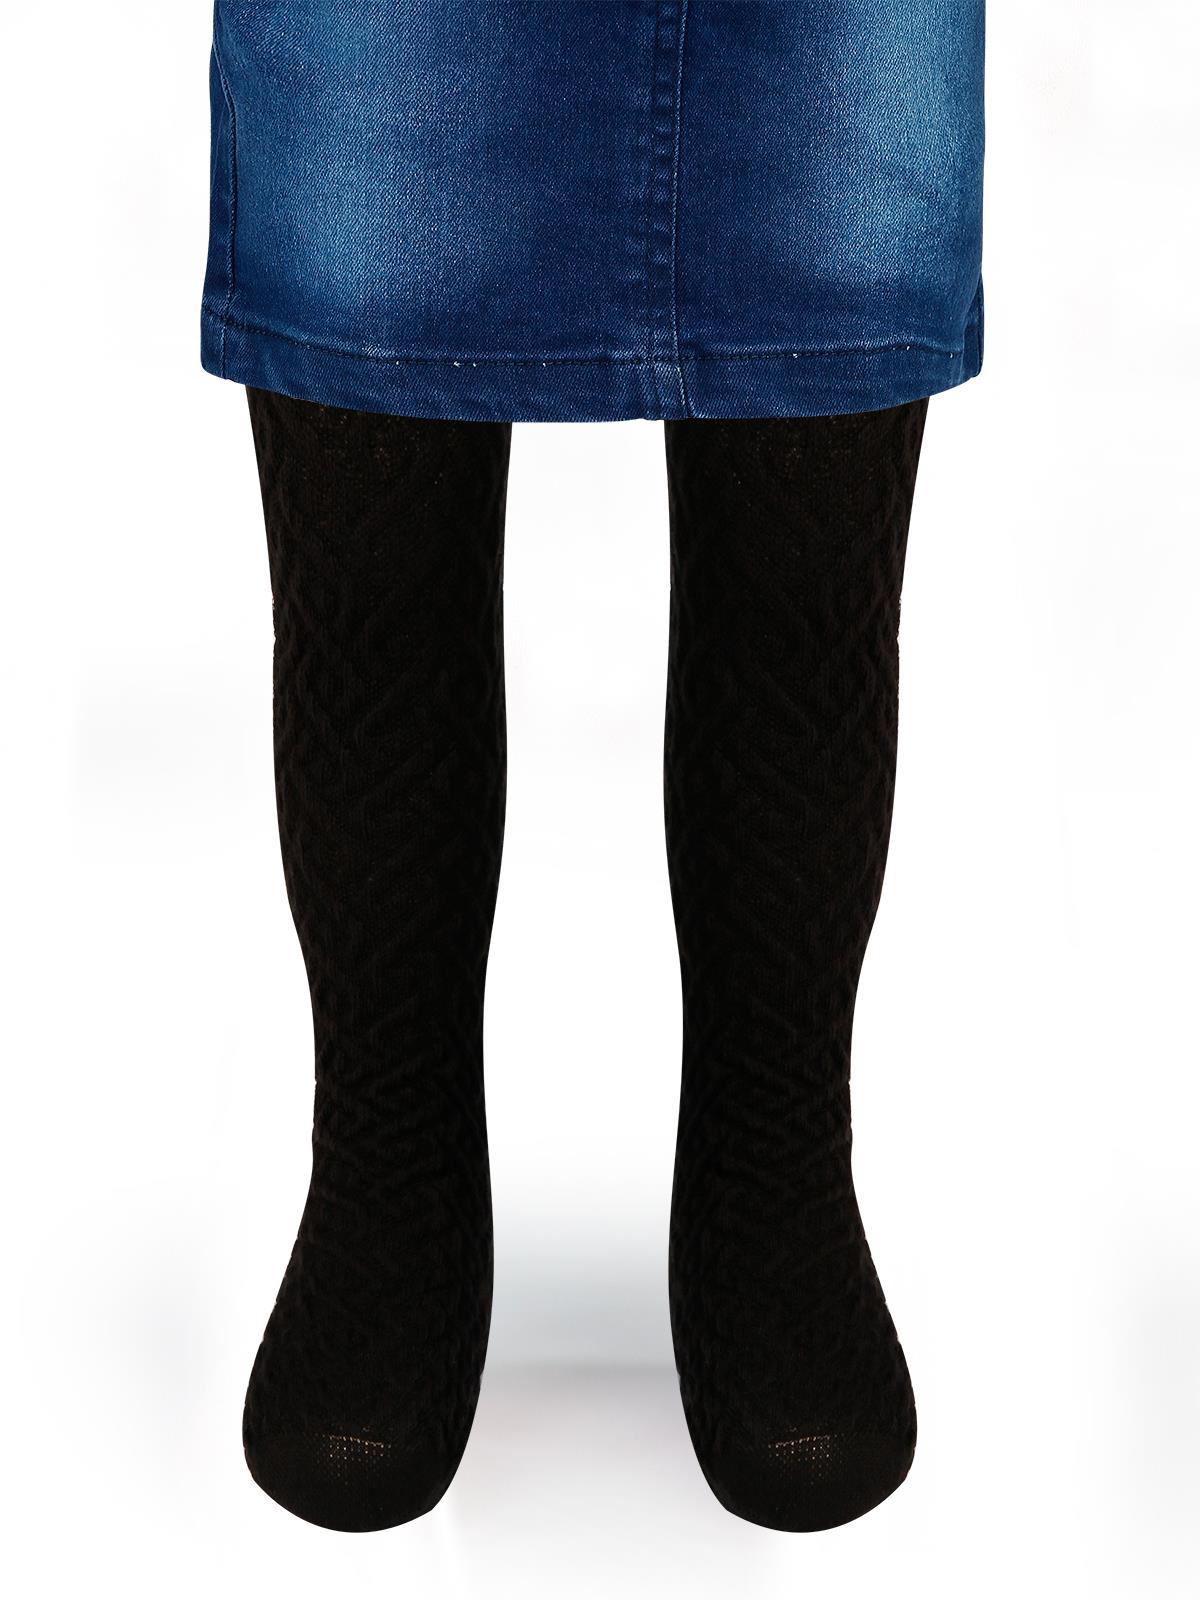 Bella Calze Kız Çocuk Triko Külotlu Çorap 2-11 Yaş Siyah